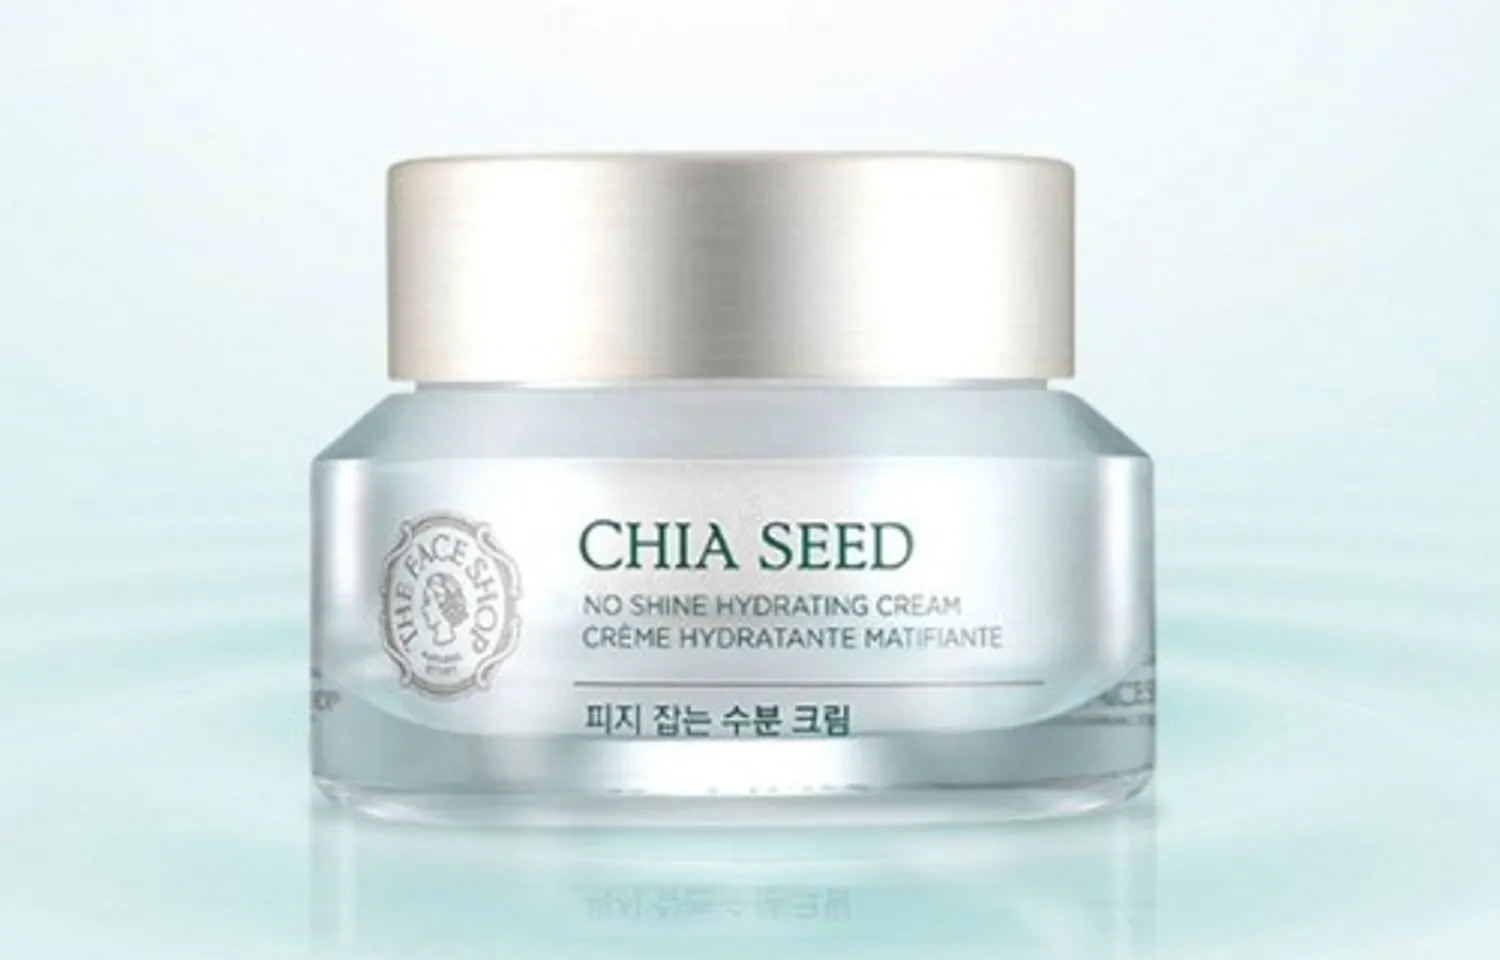 Kem dưỡng ẩm The Face Shop Chia Seed No Shine Hydrating dưỡng ẩm hiệu quả cho làn da